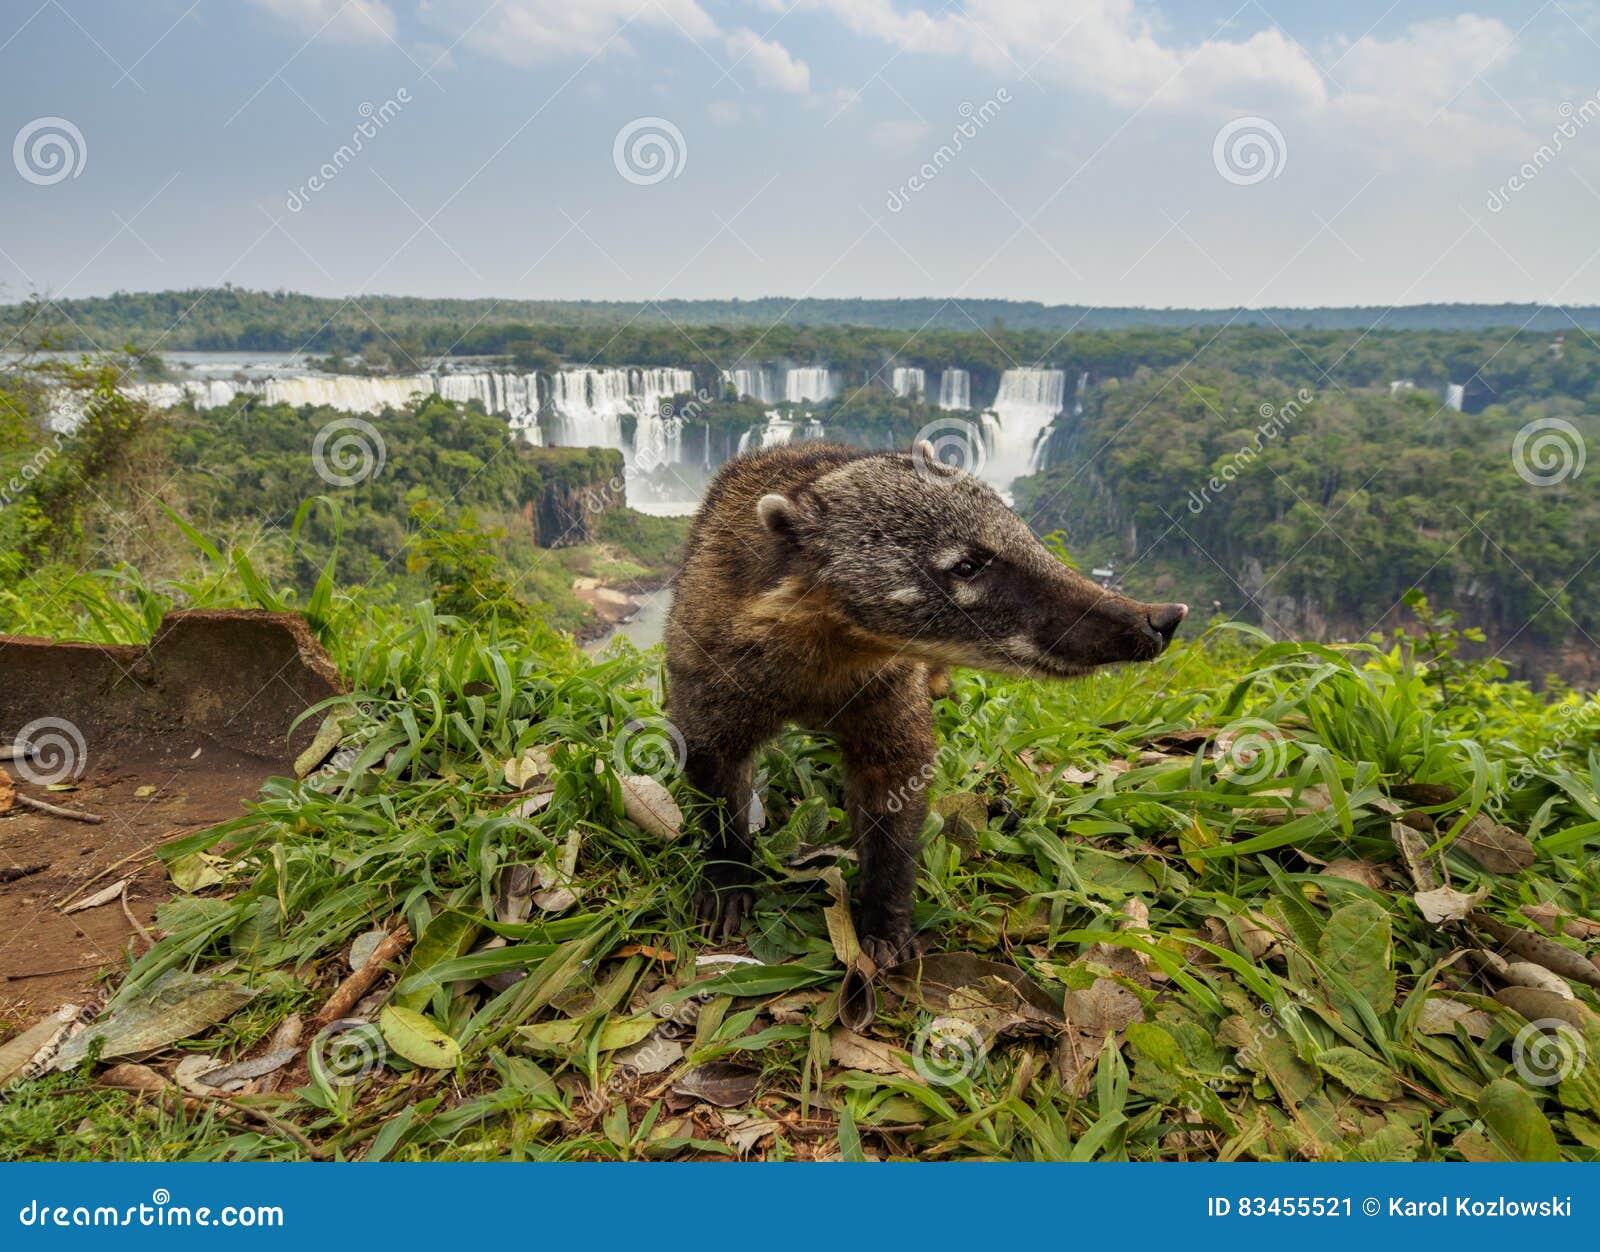 south american coati by th iguacu falls in brazil